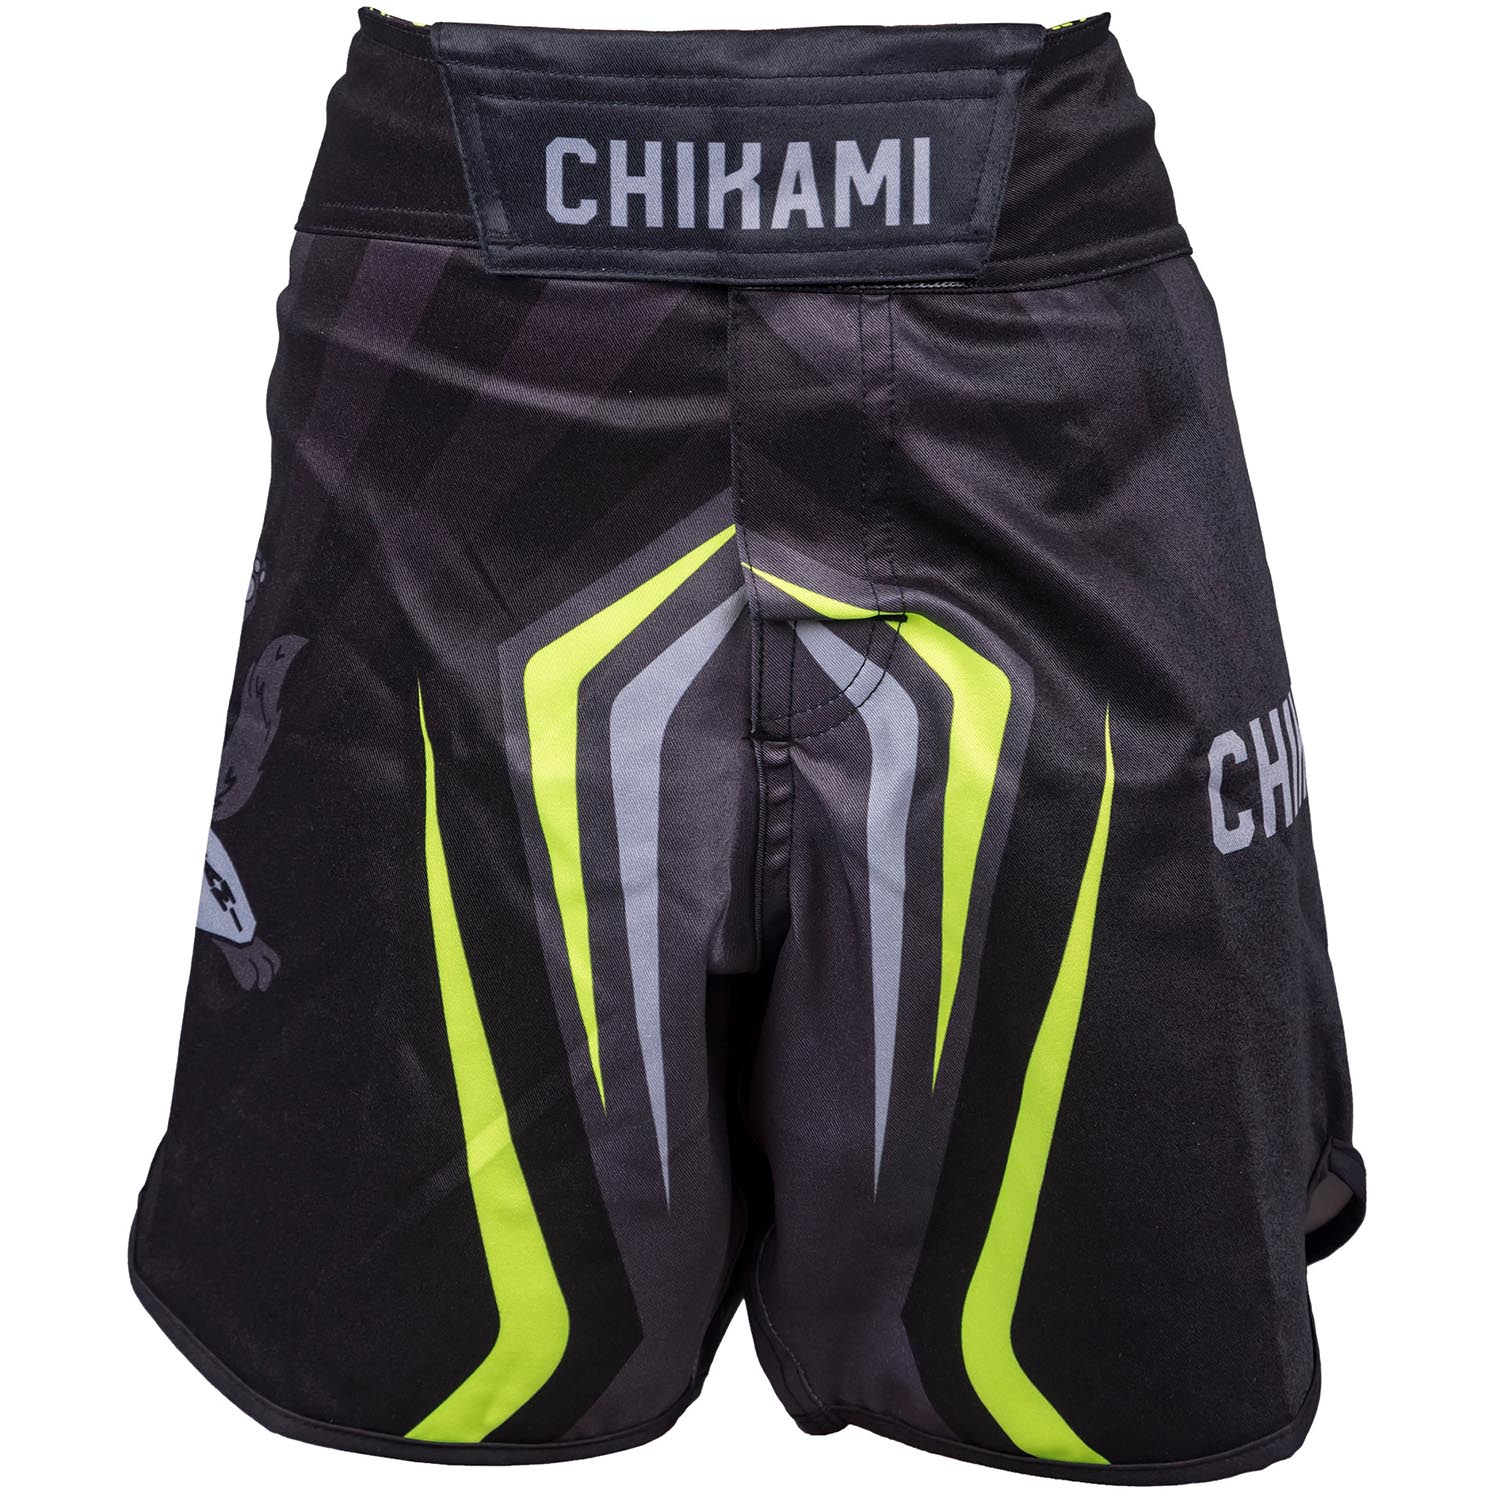 OKAMI MMA Fight Shorts, Kinder, Chikami, L